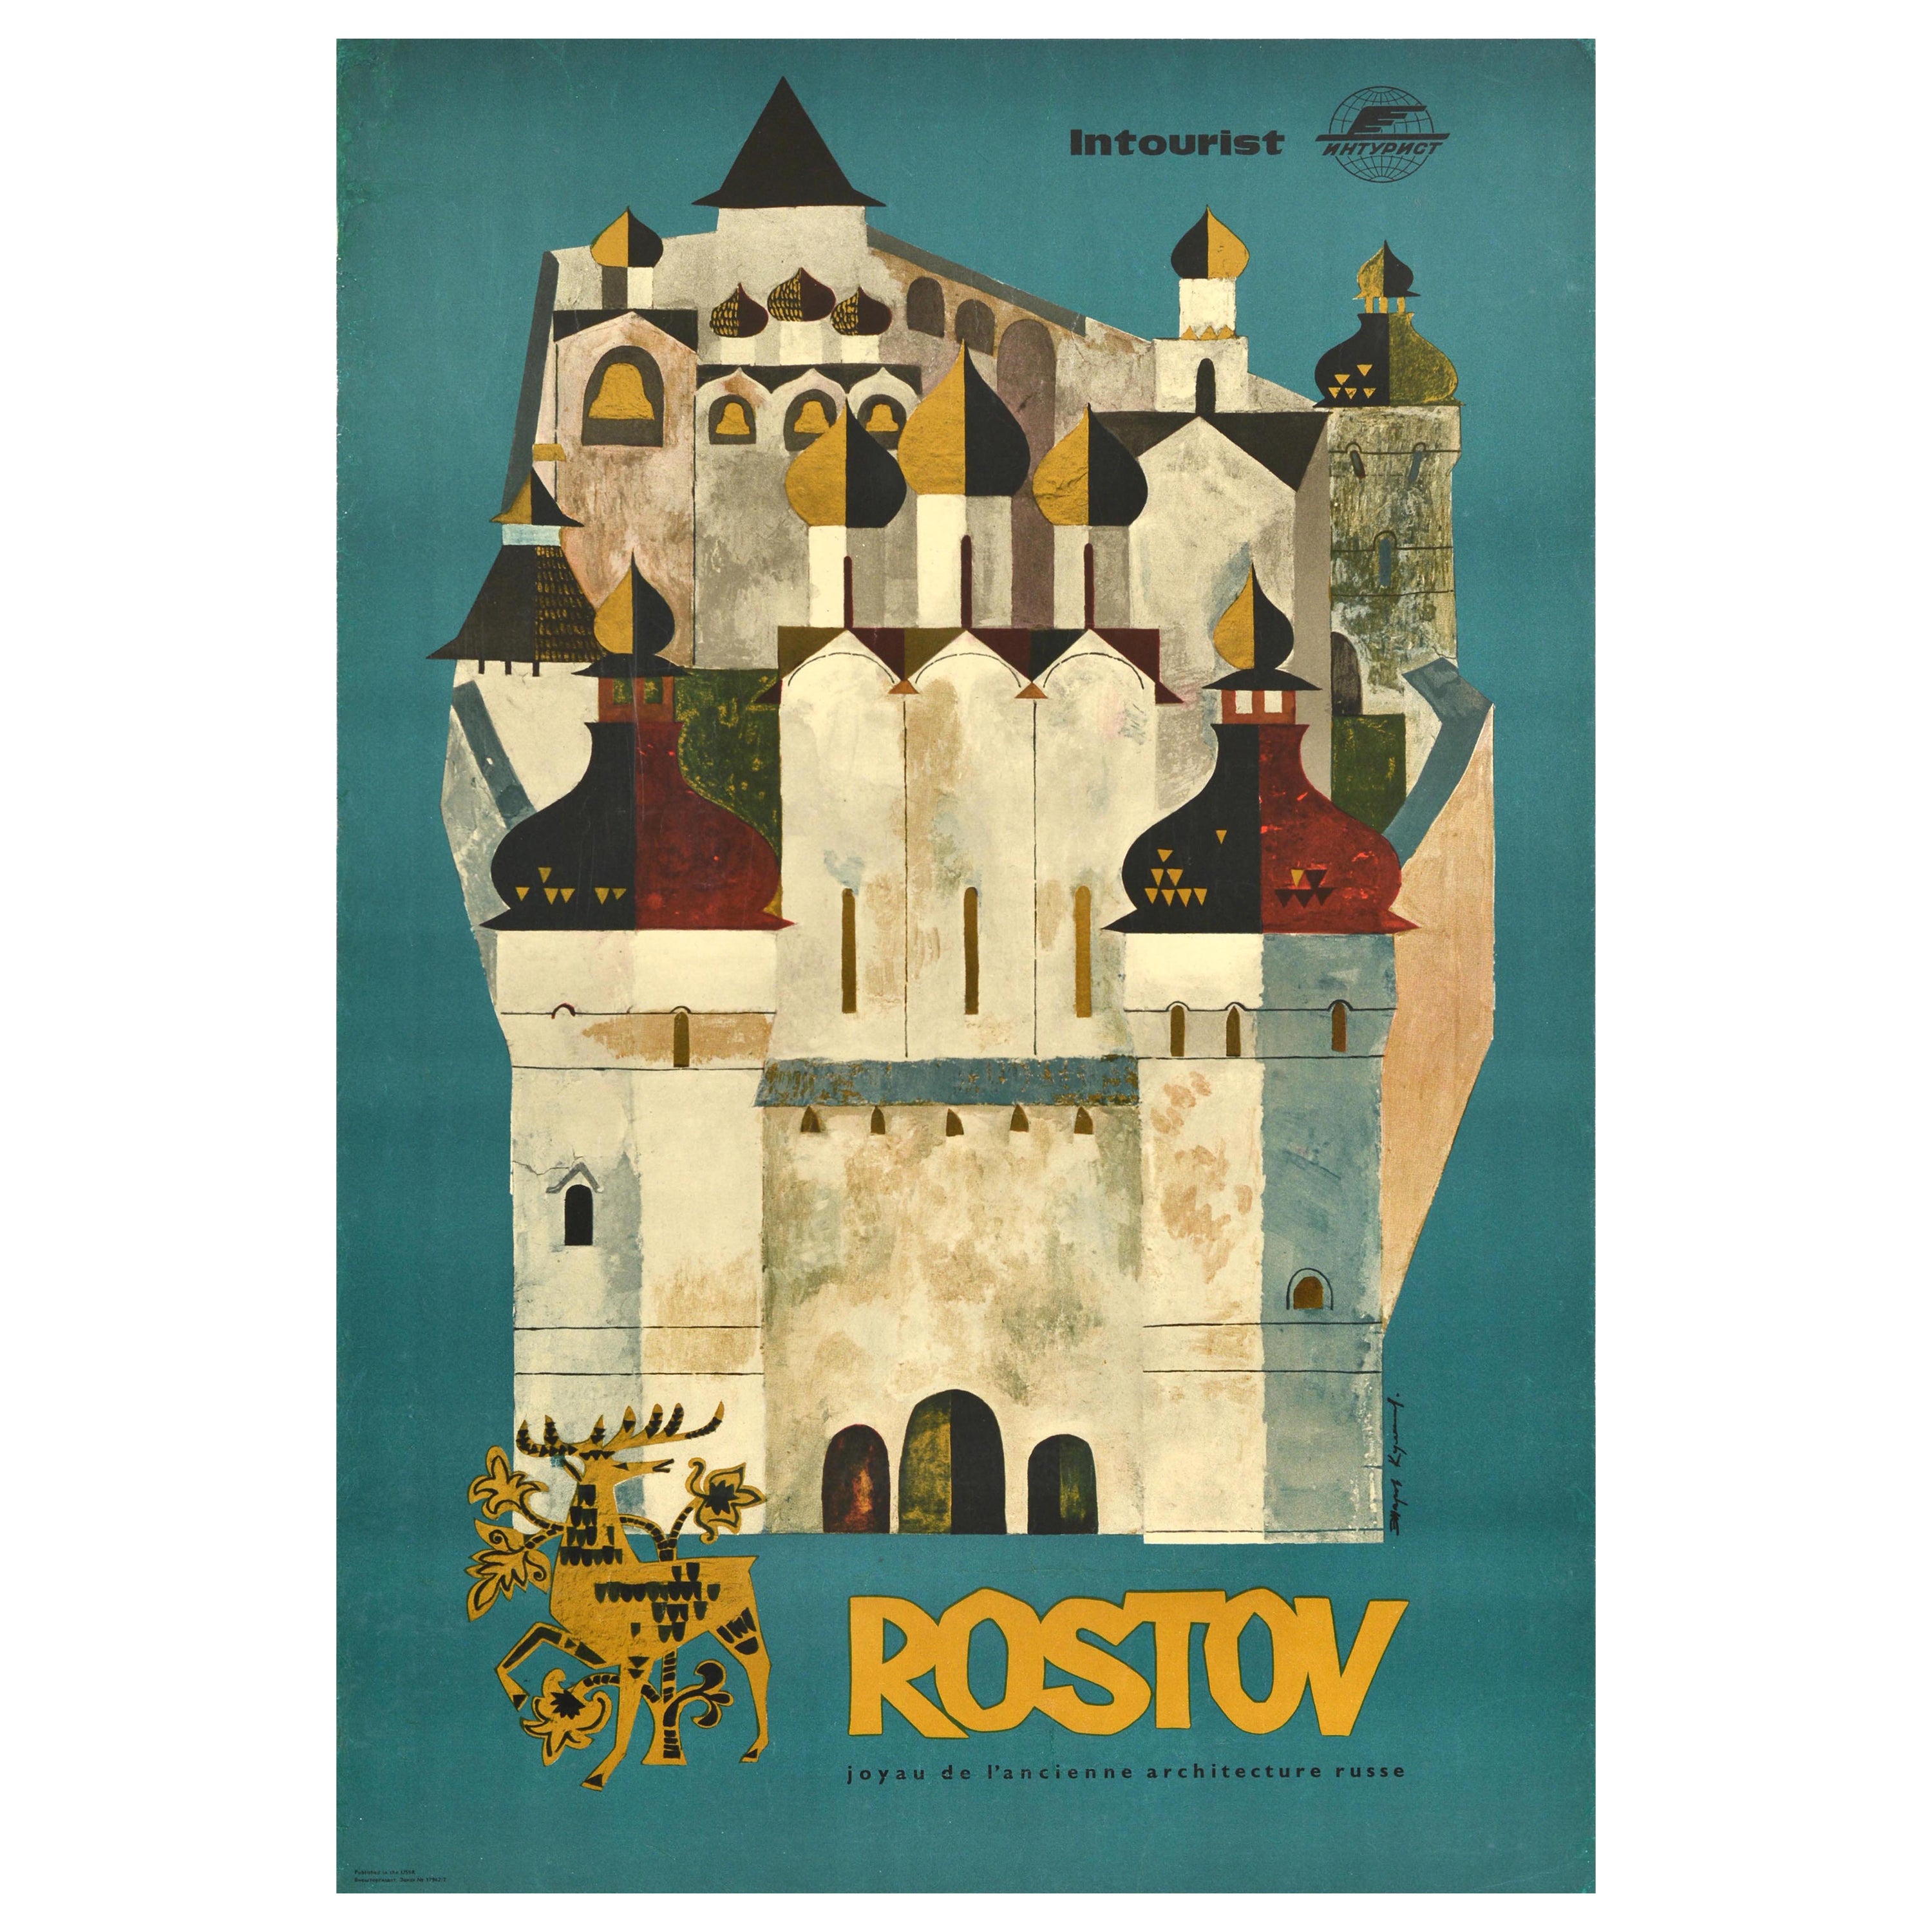 Originales sowjetisches Reiseplakat Rostow, UdSSR, touristisches Kreml